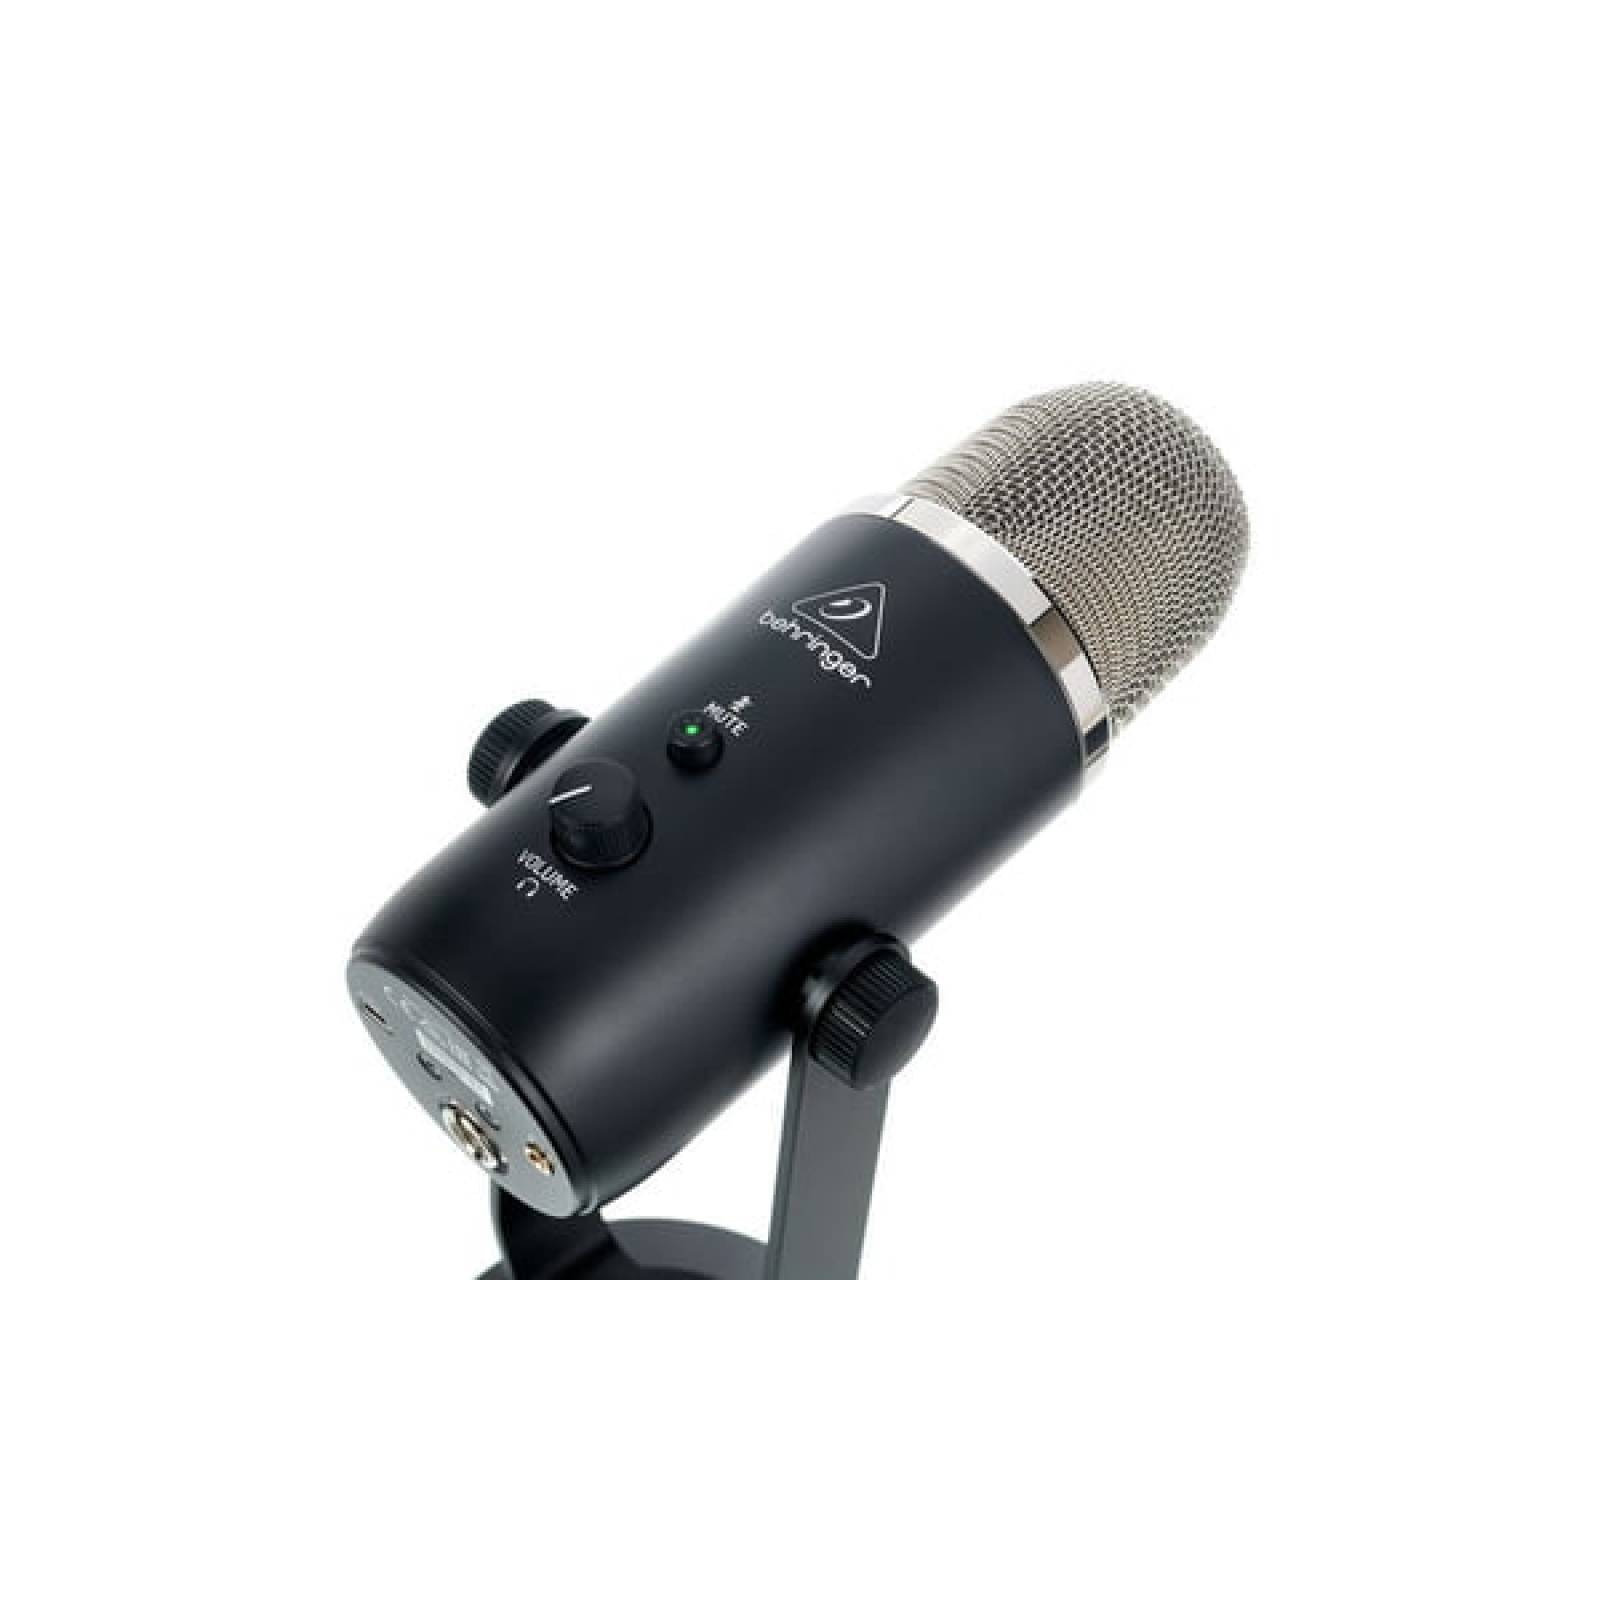 Behringer bigfoot micrófono de condensador de estudio usb todo en uno